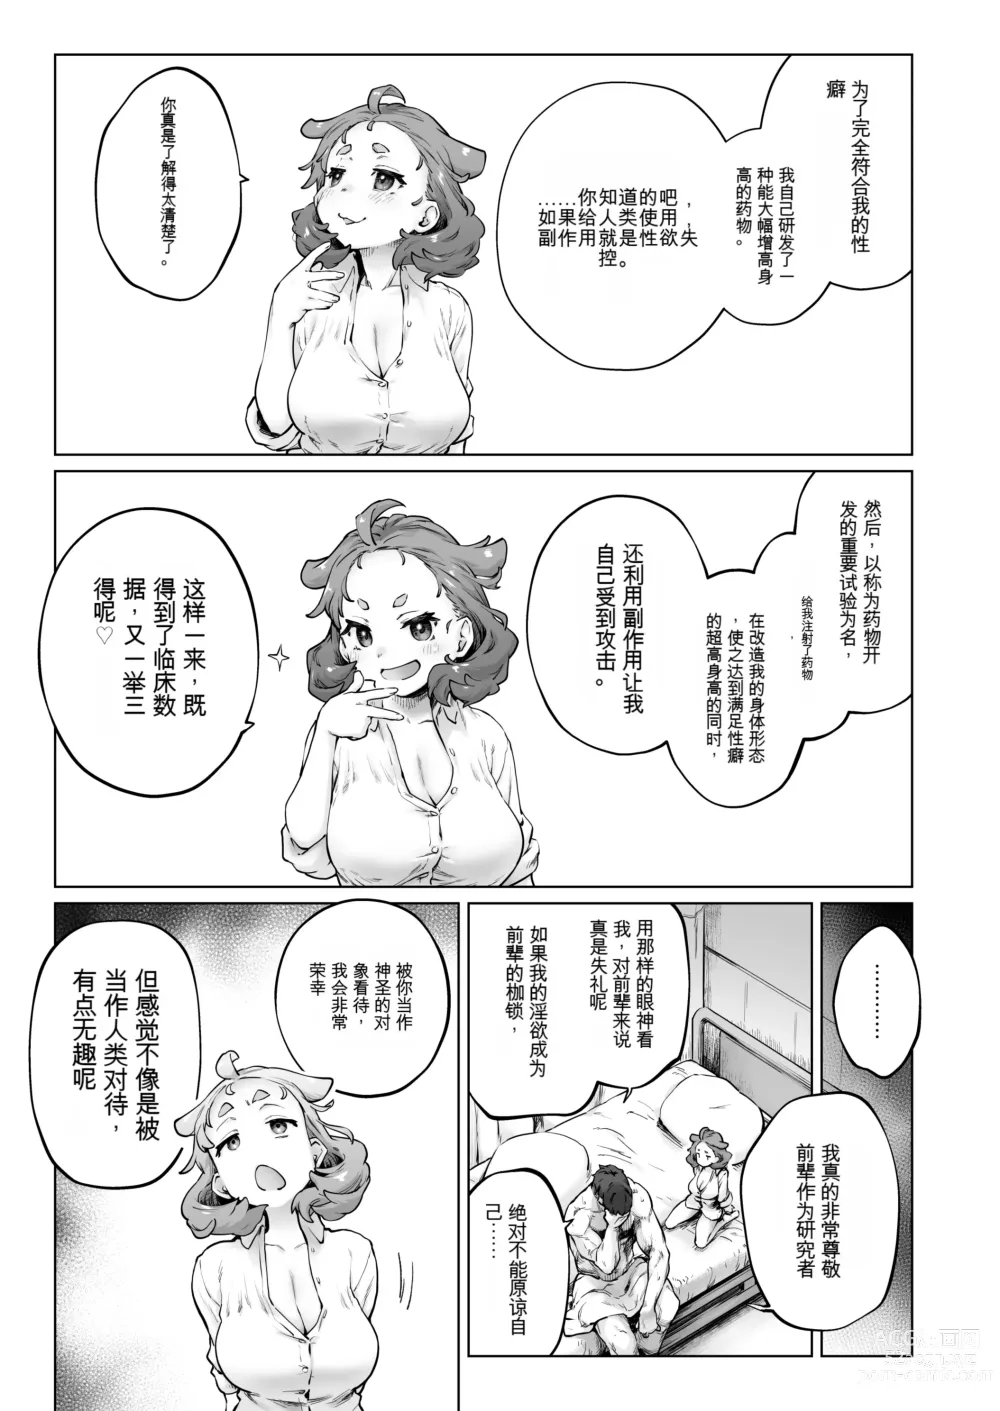 Page 13 of doujinshi Chimikko Bakunyuu Hakase no Seiheki